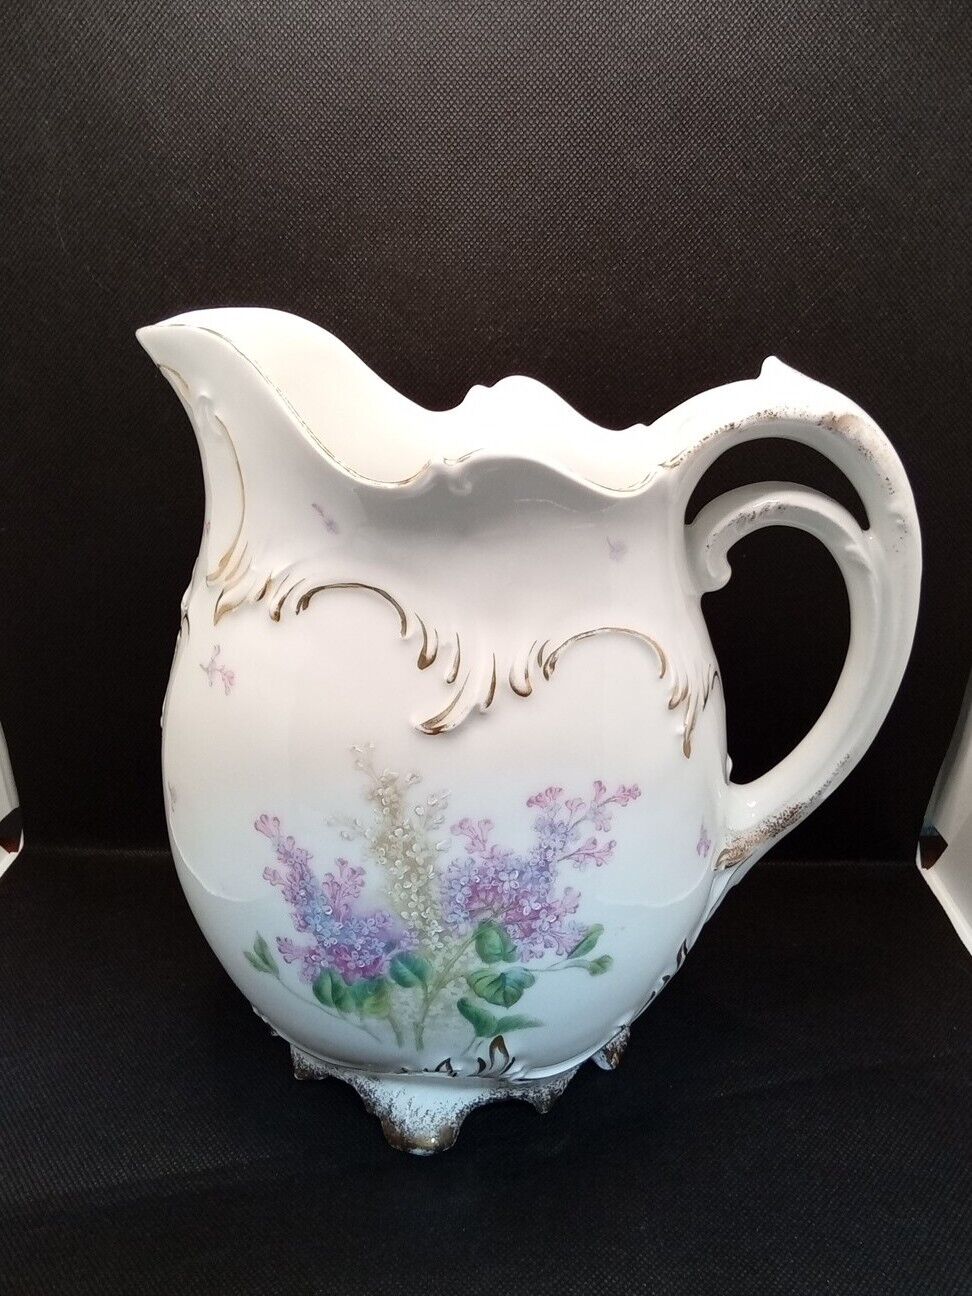 Stunning Vintage/Antique Bavarian Hand Painted Floral Pitcher Ewer Jug Vase 